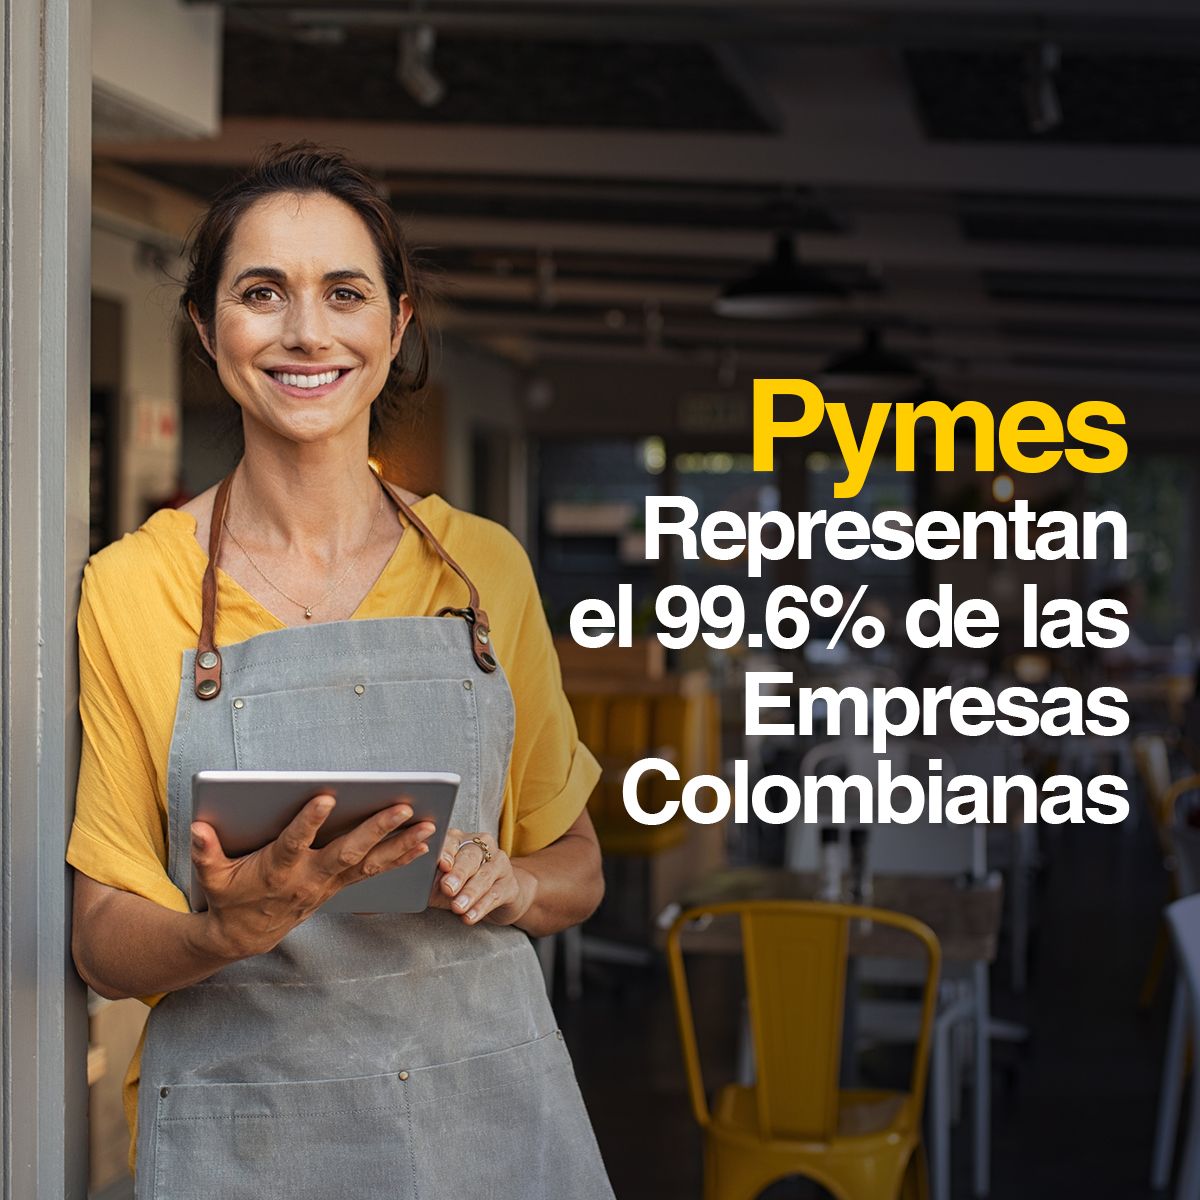 Pymes Representan el 99.6% de las Empresas Colombianas